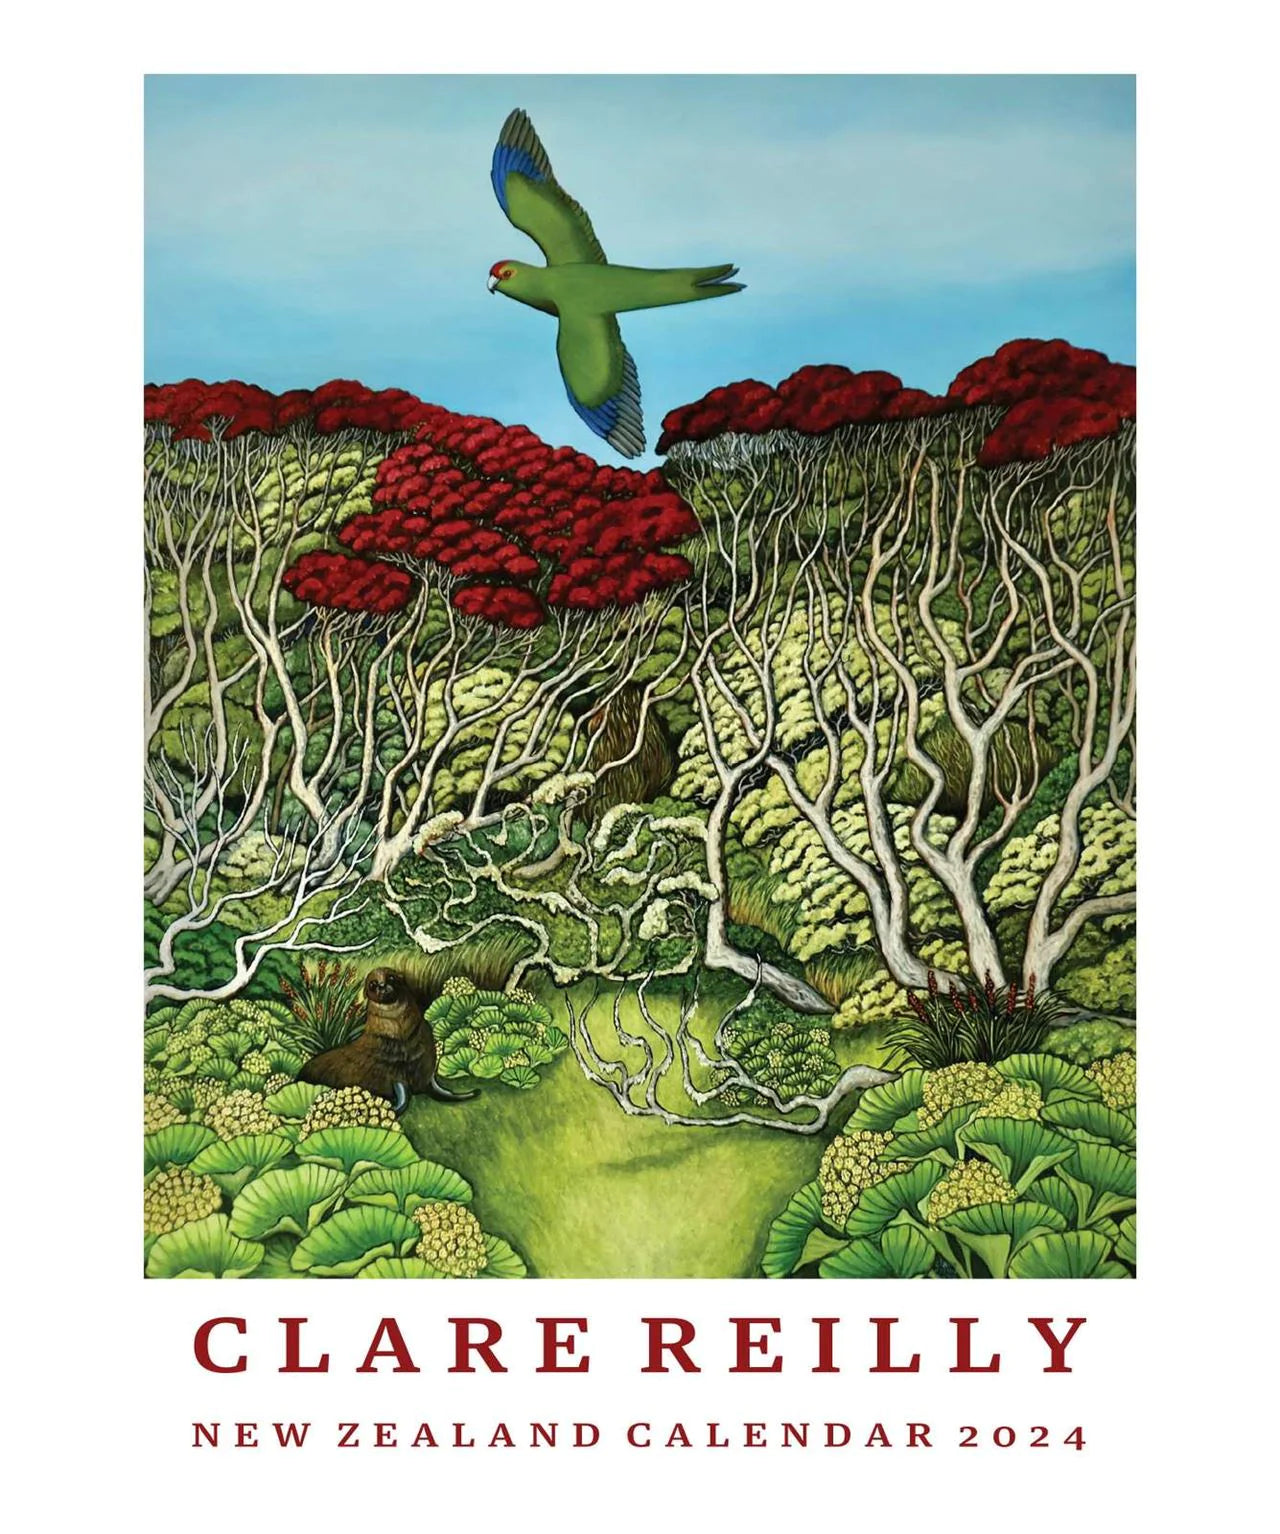 Clare Reilly 2024 Calendar